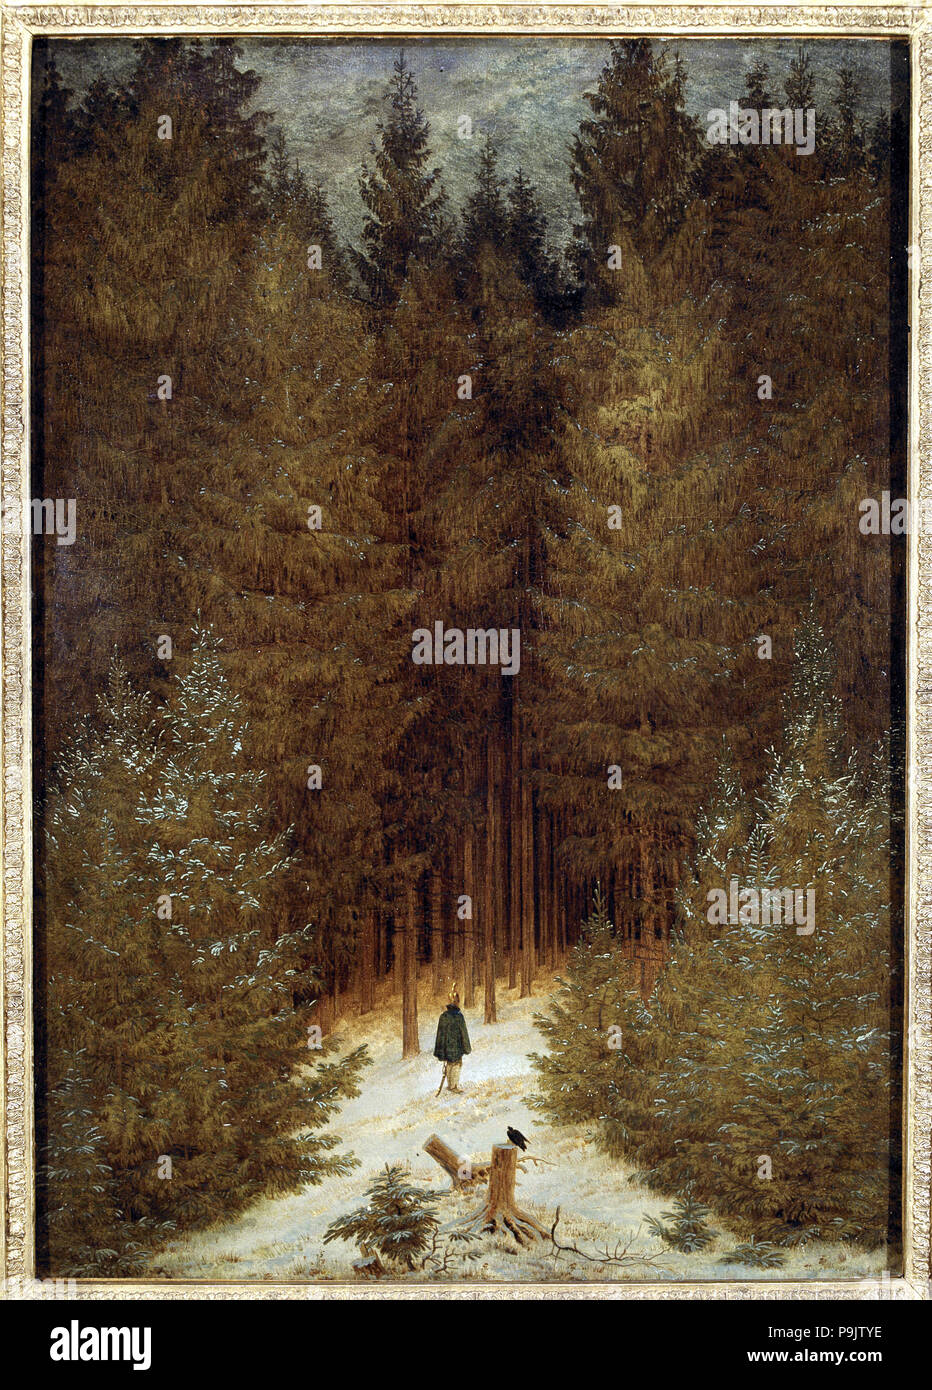 Cazador en el bosque", 1813 - 1814 por Caspar Friedrich Fotografía de stock  - Alamy